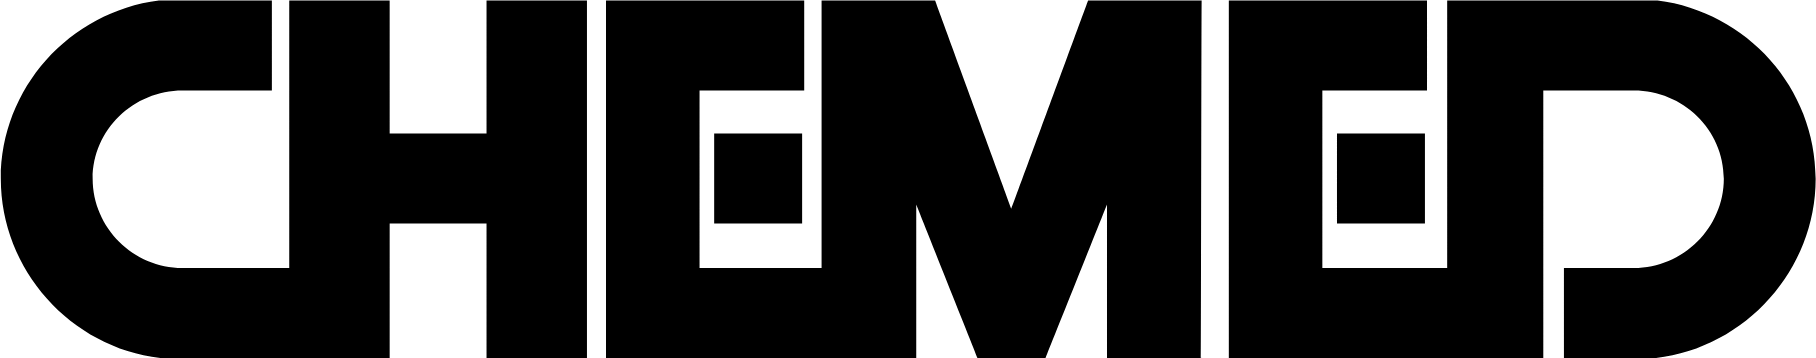 Chemed logo (transparent PNG)